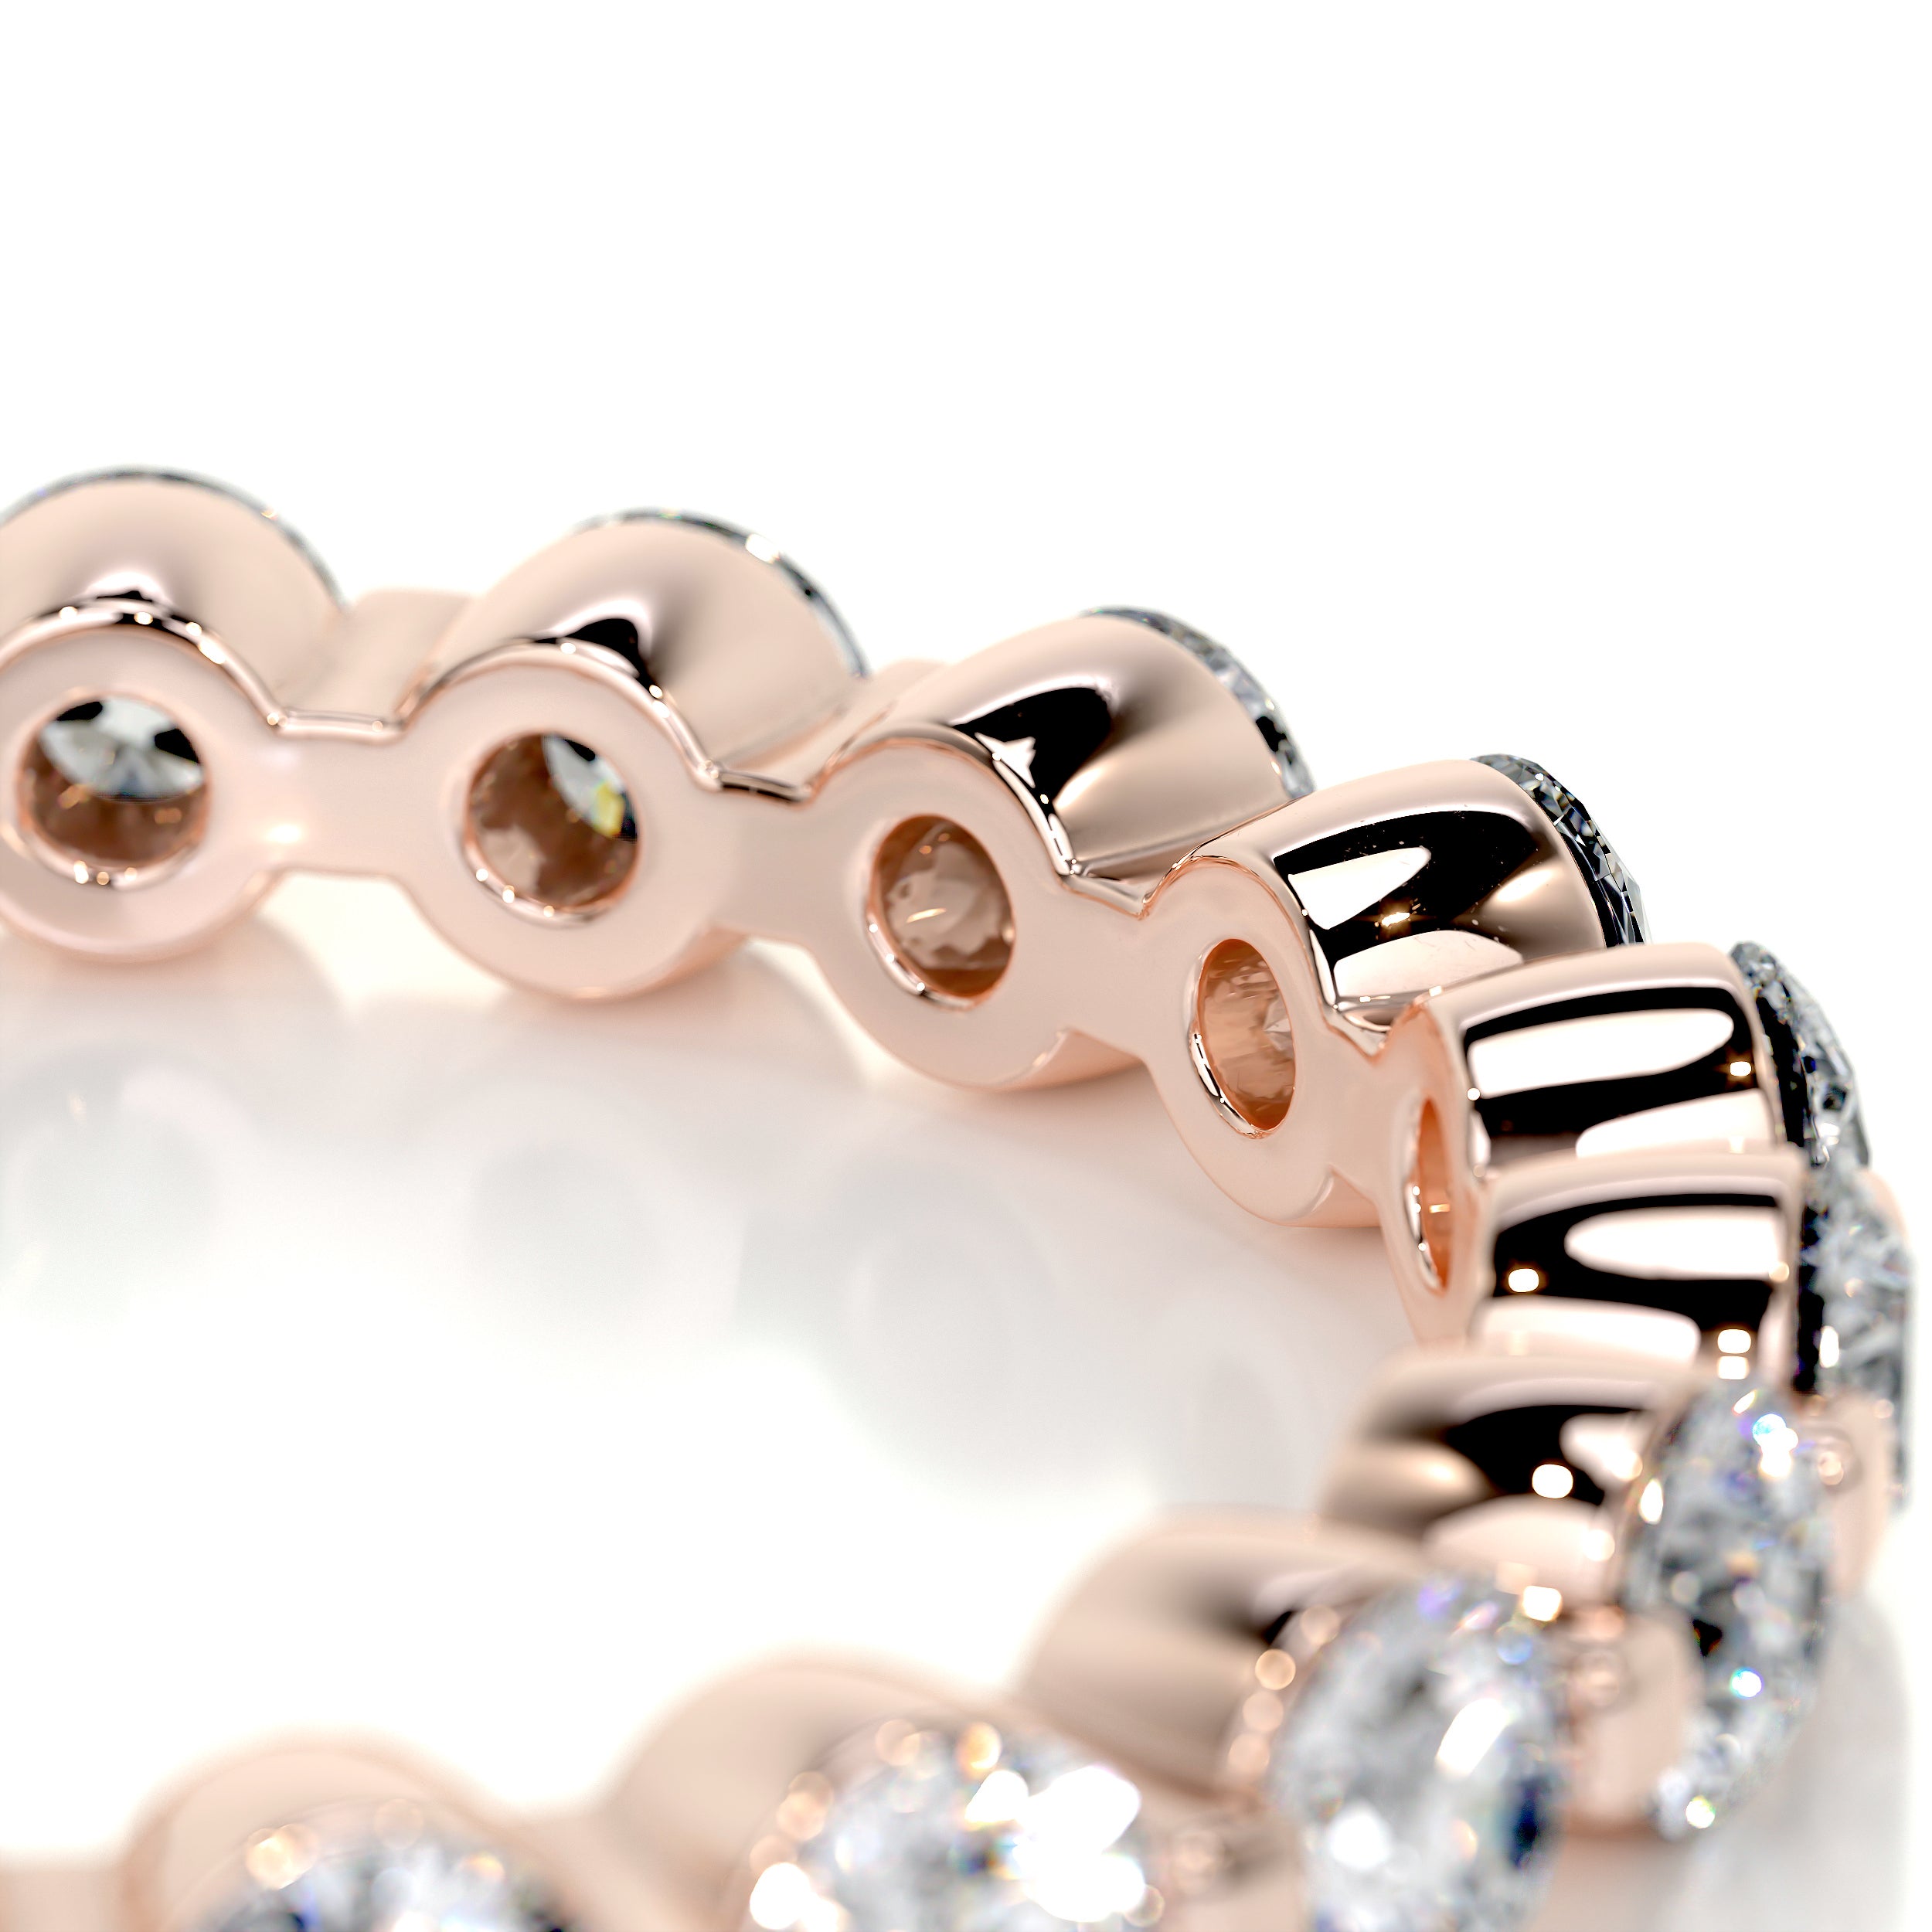 Josie Eternity Wedding Ring   (1.75 Carat) -14K Rose Gold